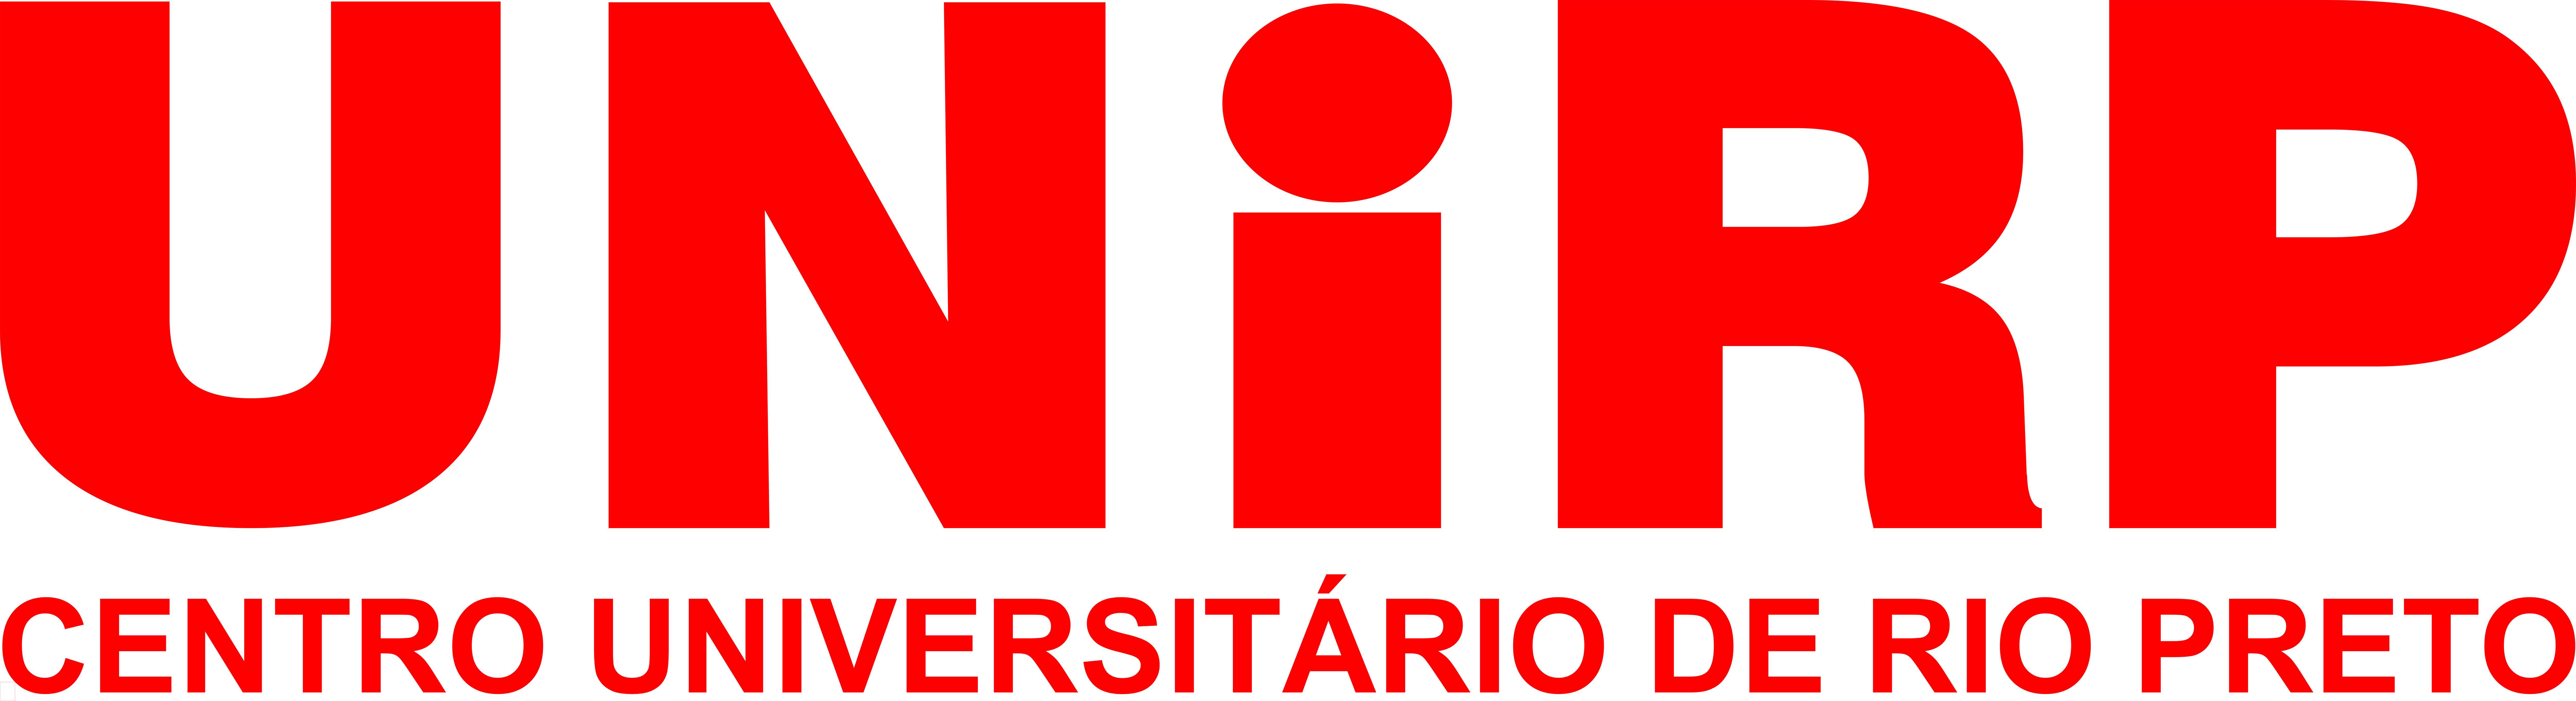 Logo UNIRP VERMELHA SEM FUNDO